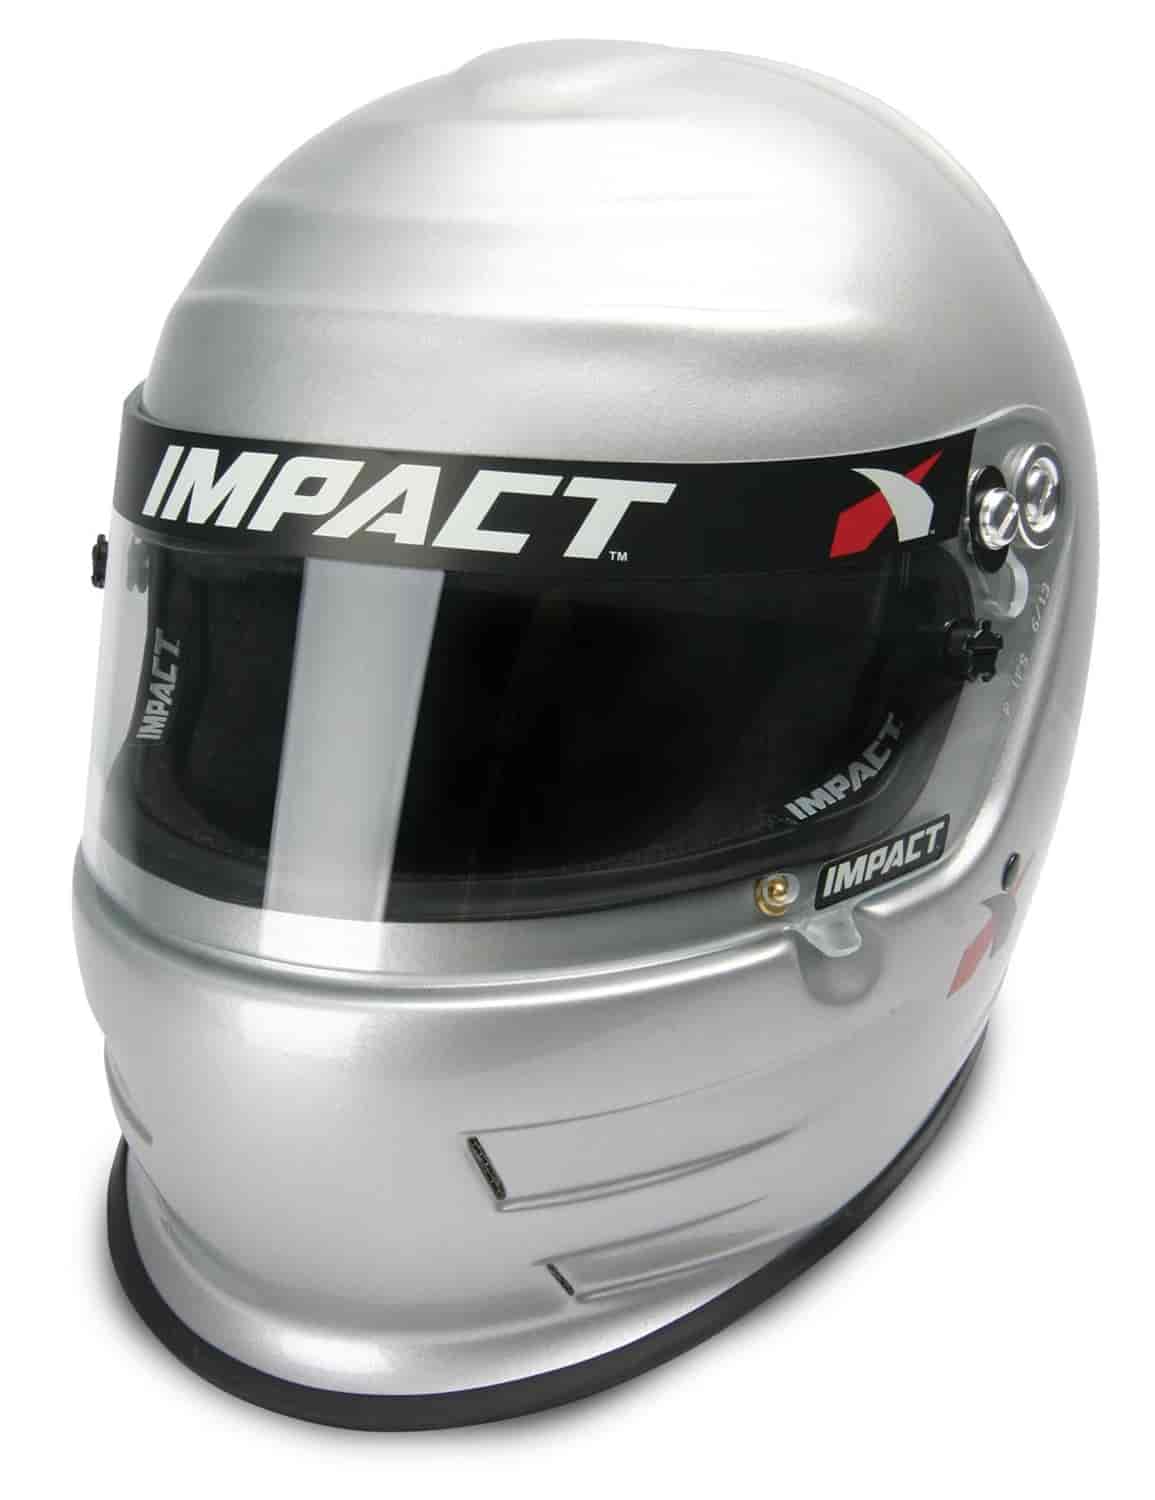 Helmet - Vapor 2014 SNELL15 XXL Silver